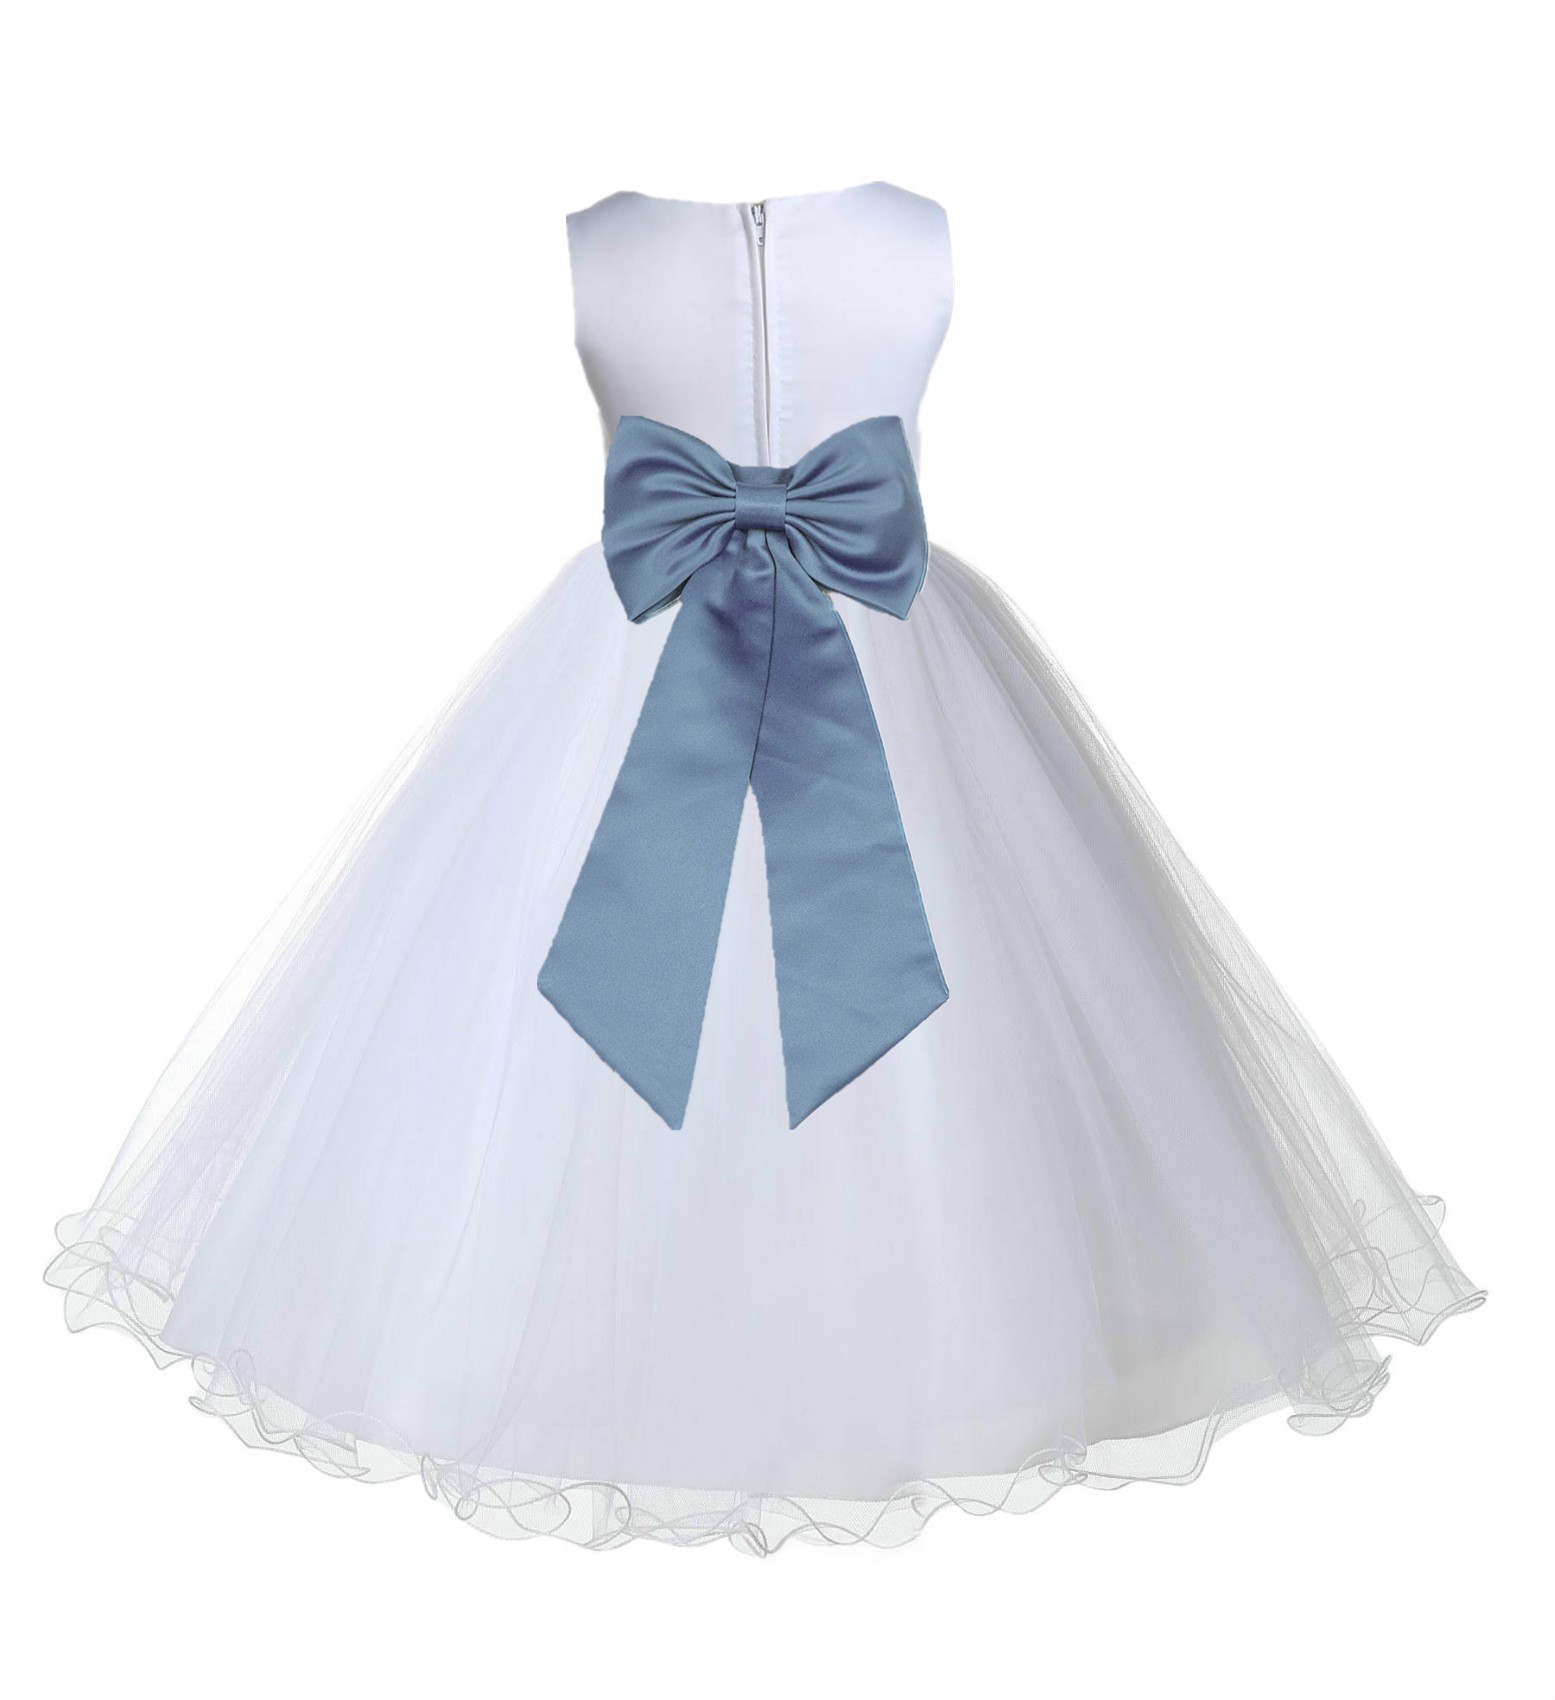 White / Steel Blue Tulle Rattail Edge Flower Girl Dress Wedding Bridesmaid 829T